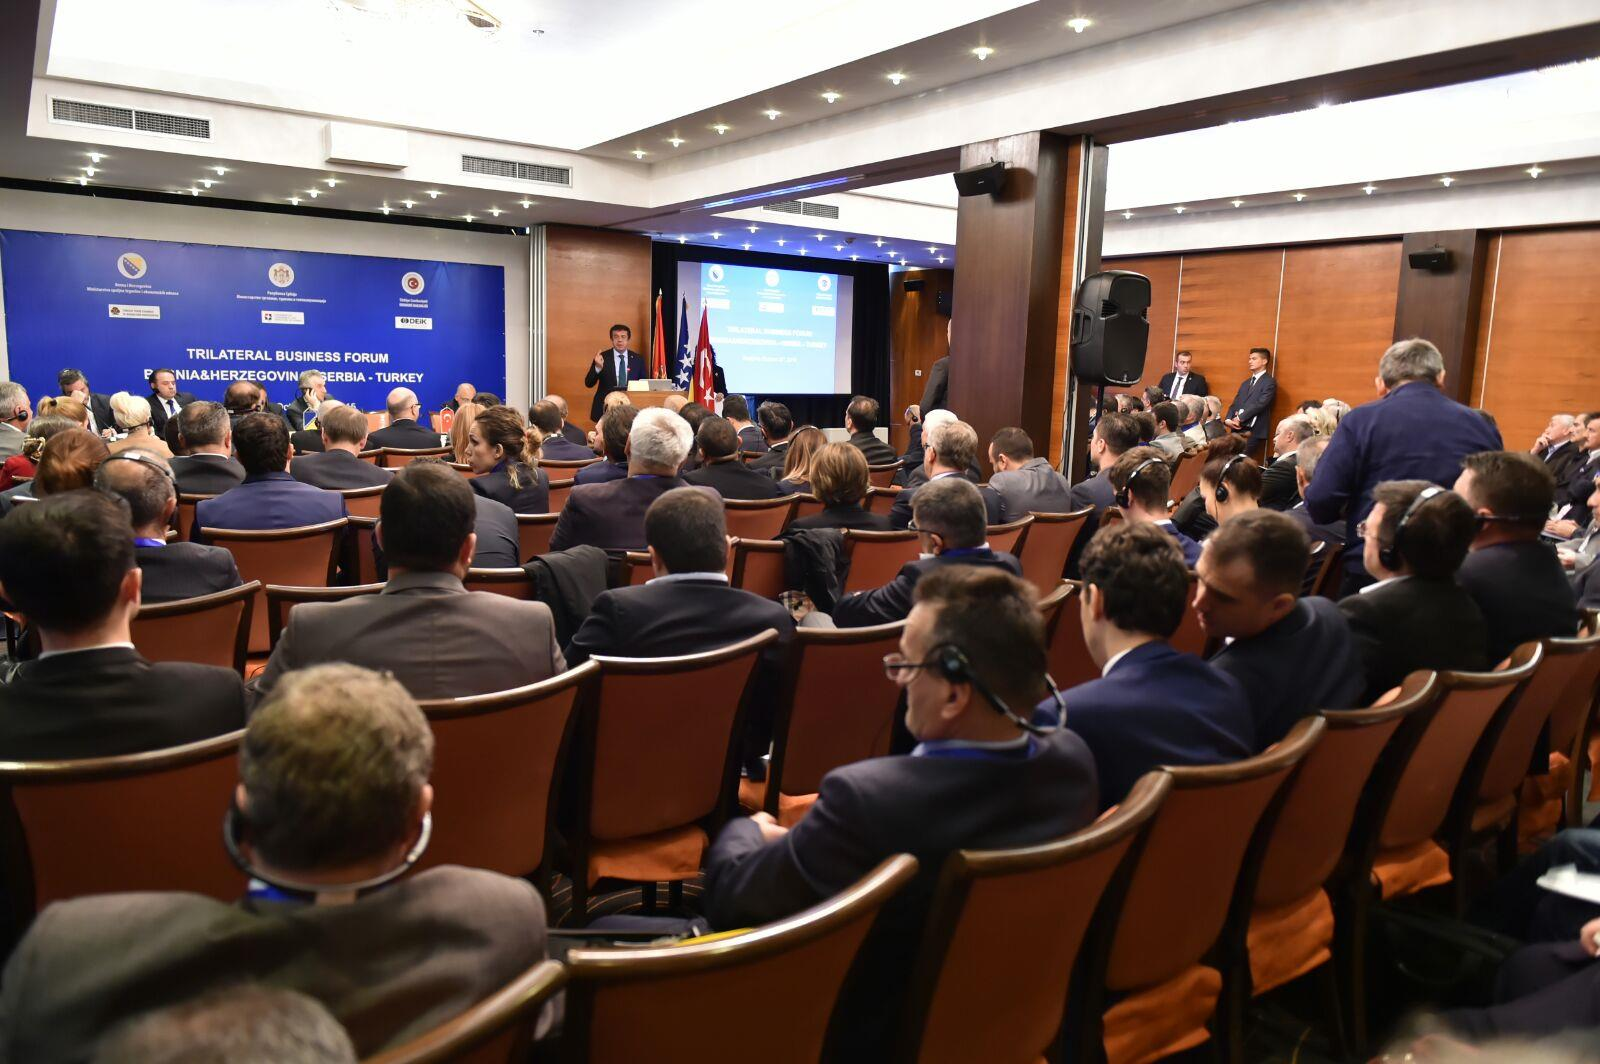 Sonuç Raporu: Türkiye-Bosna Hersek-Sırbistan Üçlü İş Forumu, üç ülke arasındaki ekonomik işbirliğini arttırma amacıyla kurulan Üçlü Ticaret Komitesinin çalışmaları sonucunda ilk olarak Saraybosna da